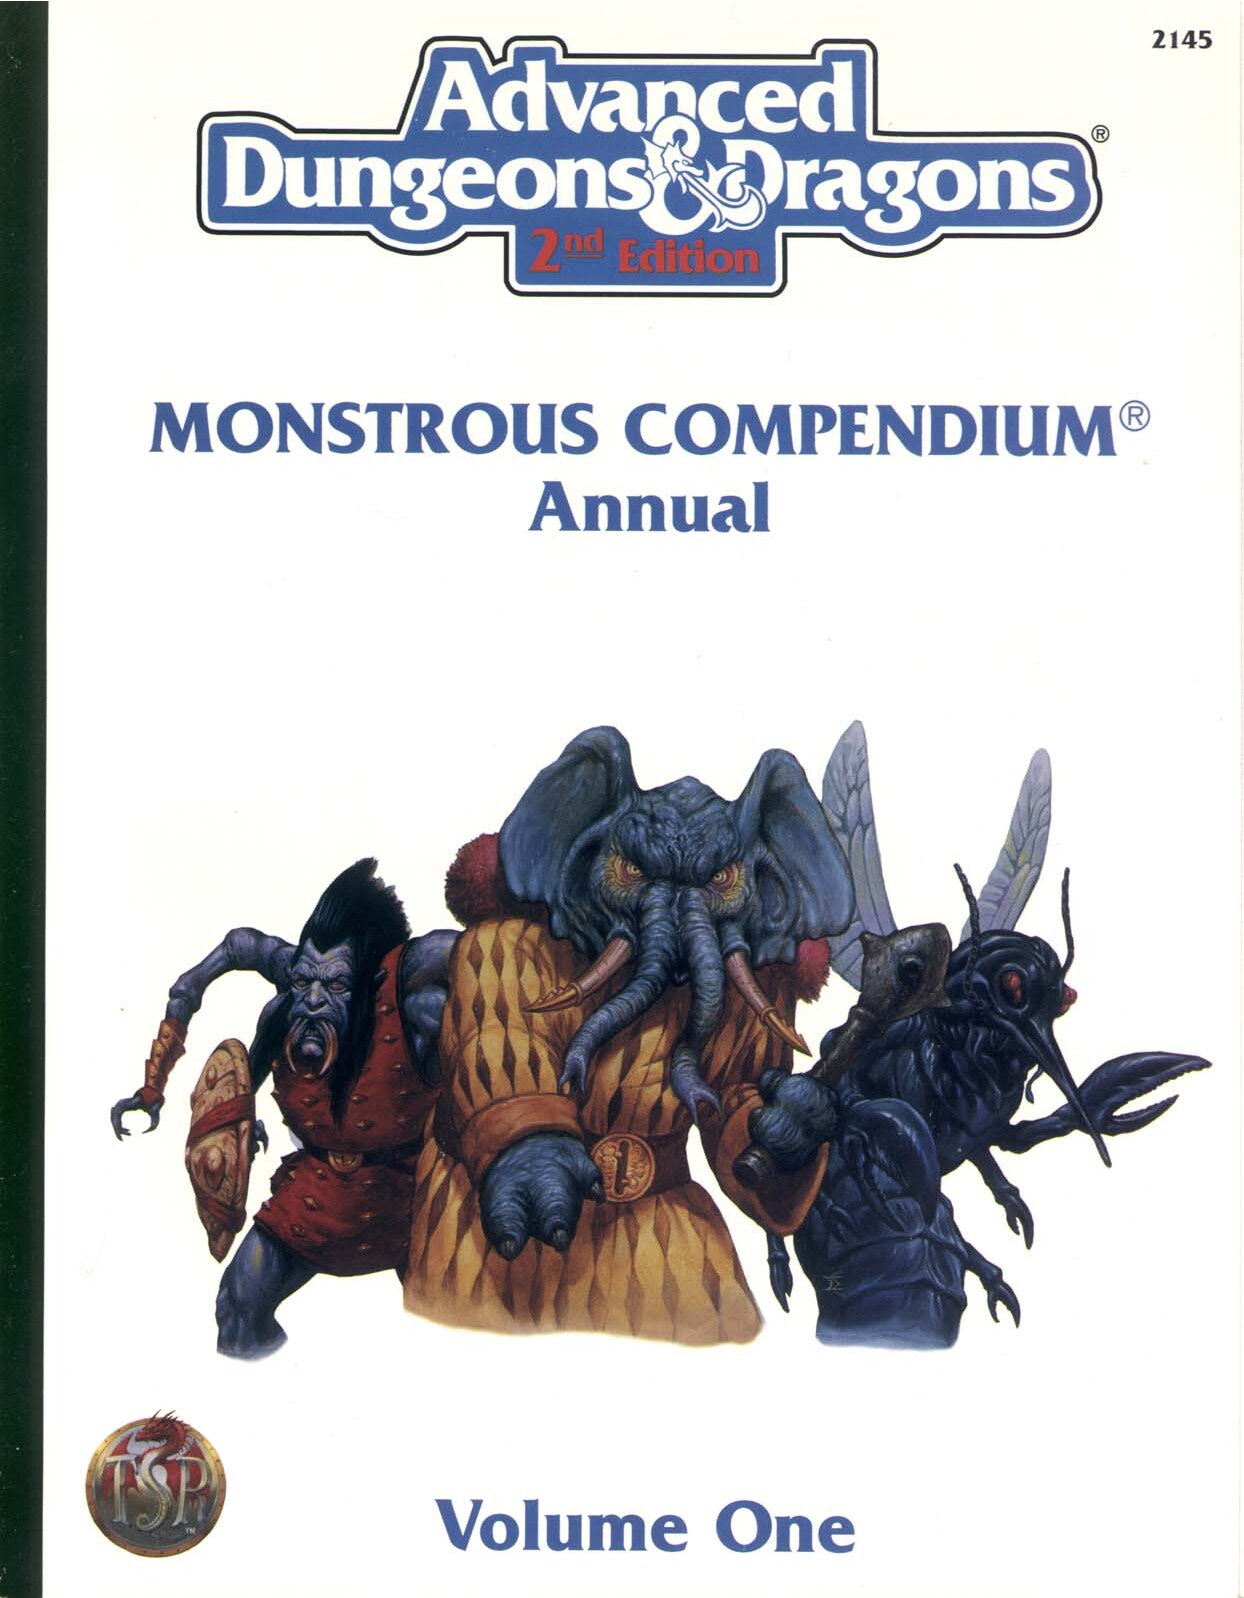 Monstrous Compendium Annual Volume 1